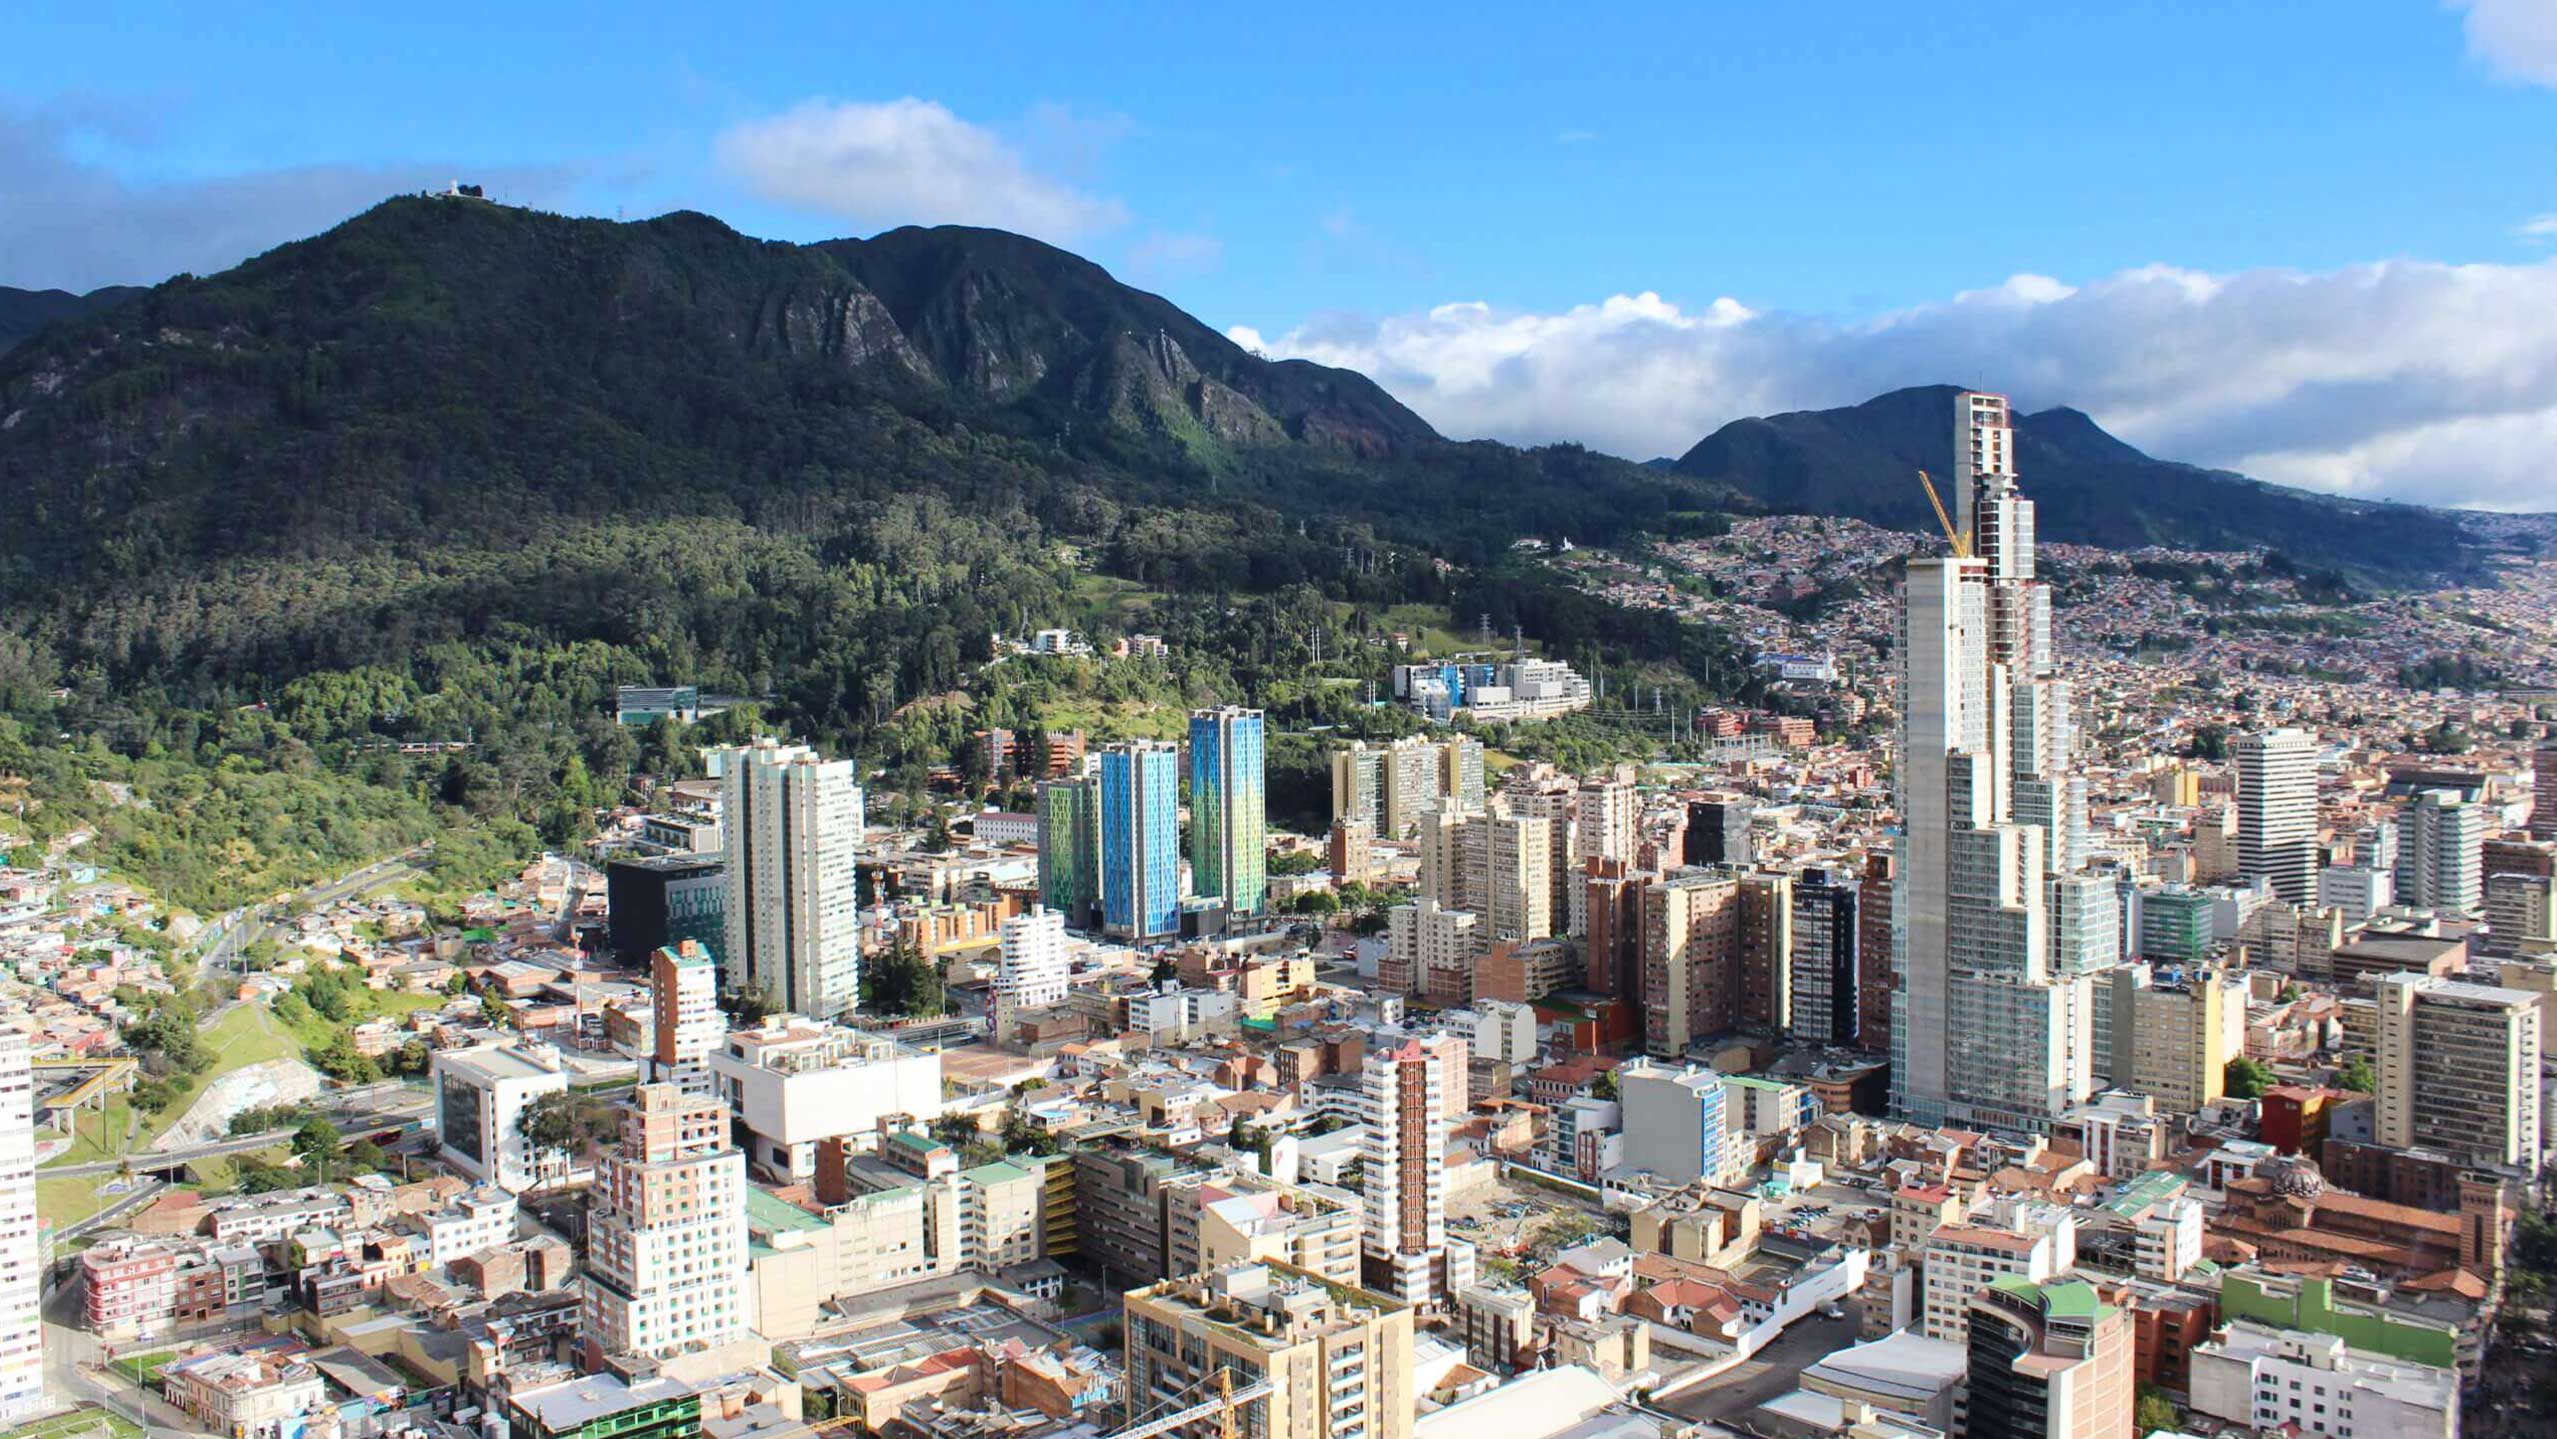 Photo of the Bogota skyline